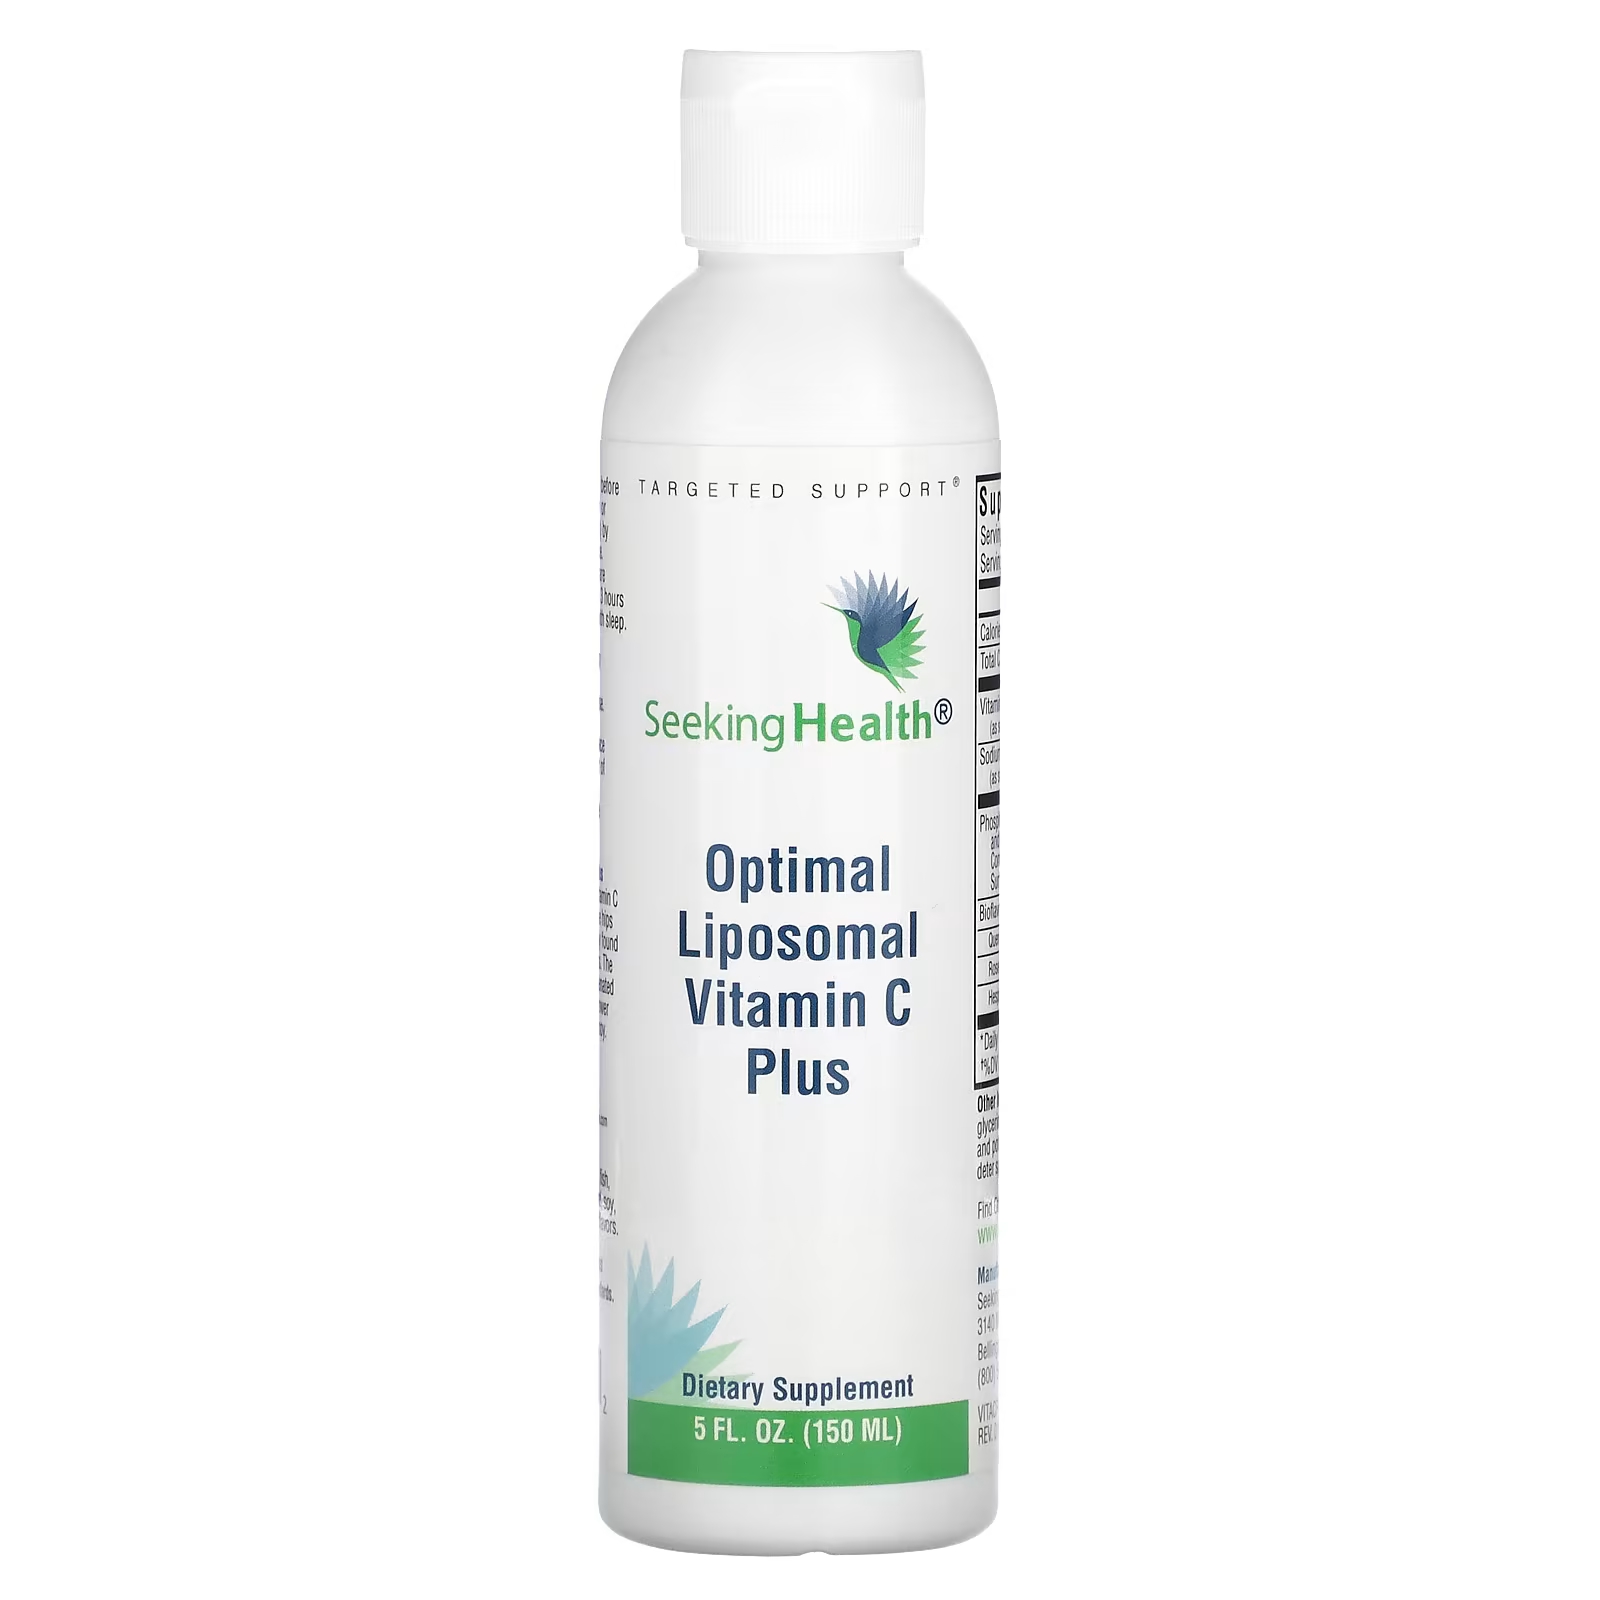 Витамин С Seeking Health оптимальный липосомальный,150 мл витамин c с цитрусовыми биофлавоноидами gnc 1000 мг 90 капсул